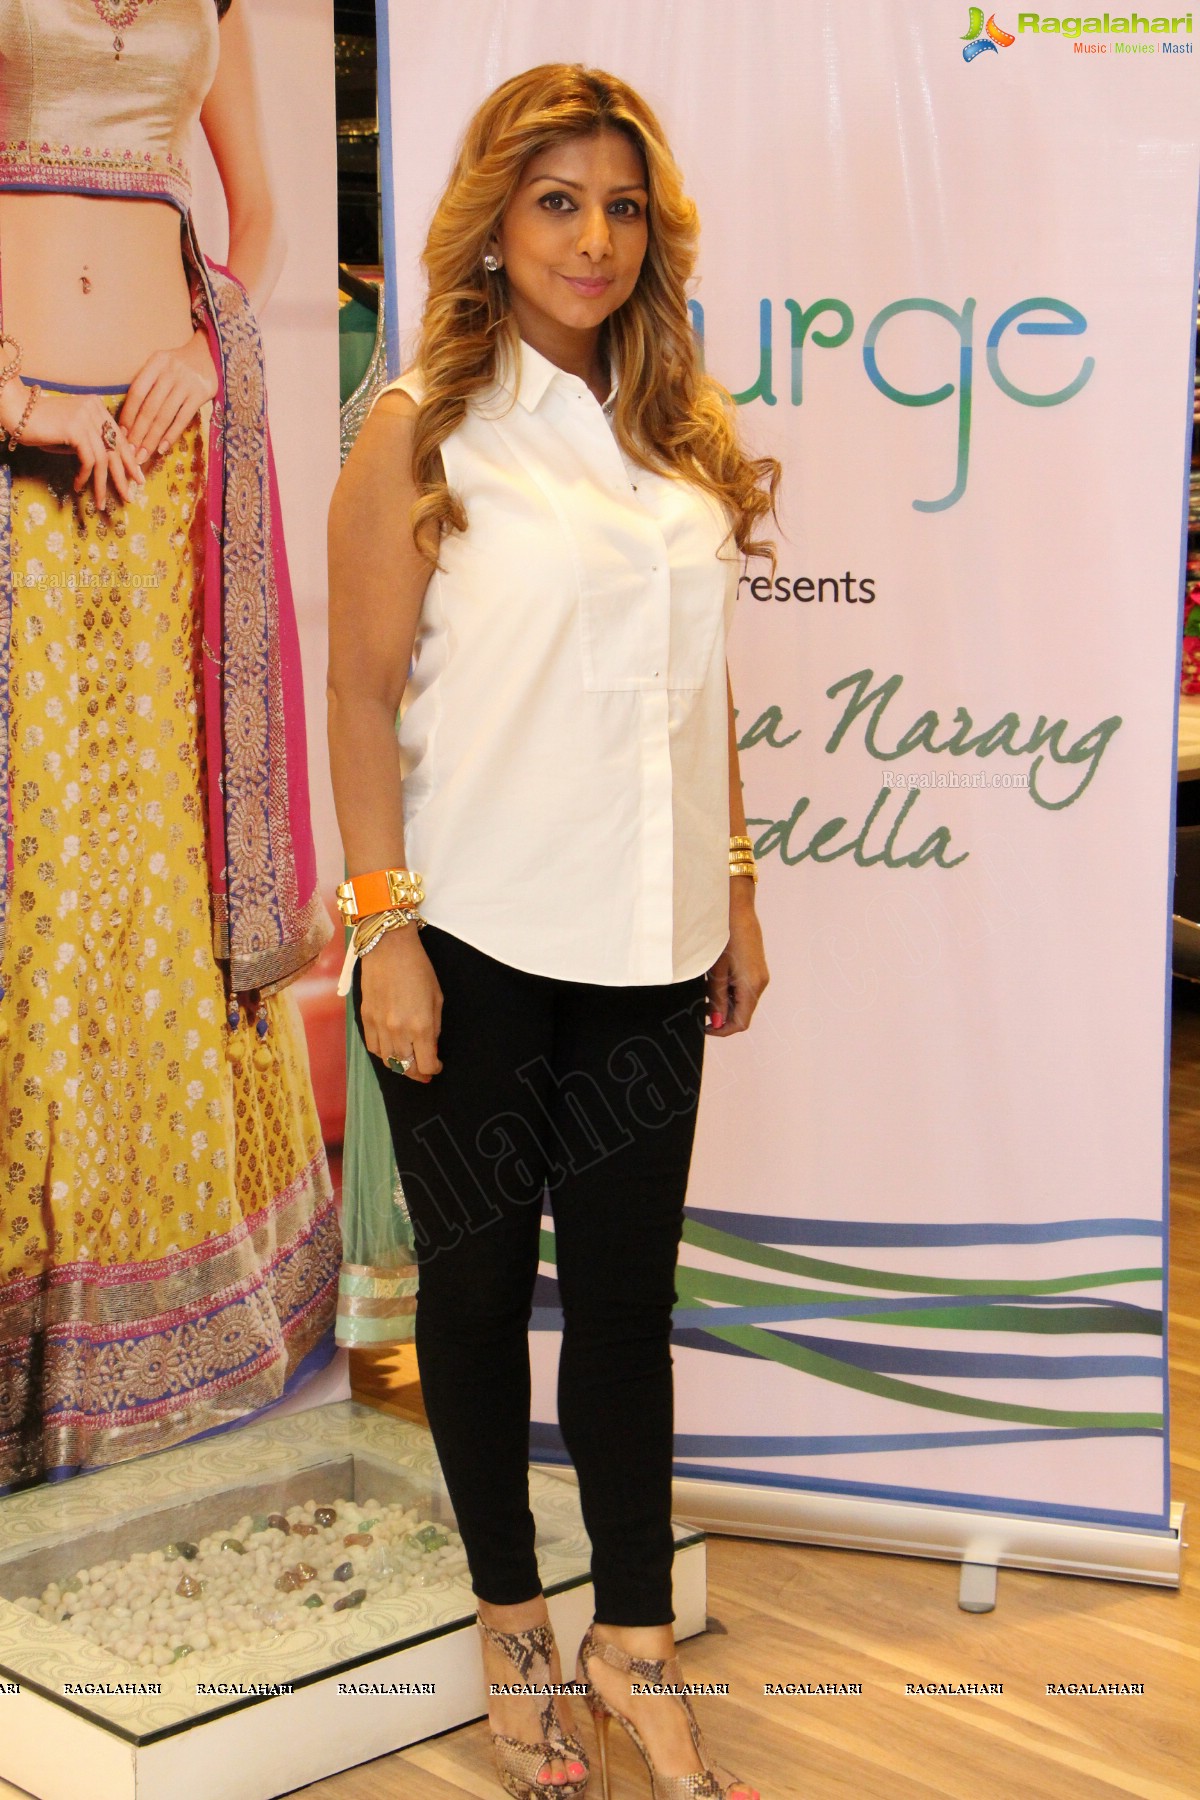 Splurge presents Ramona Narang Rodella at Mebaz, Hyderabad